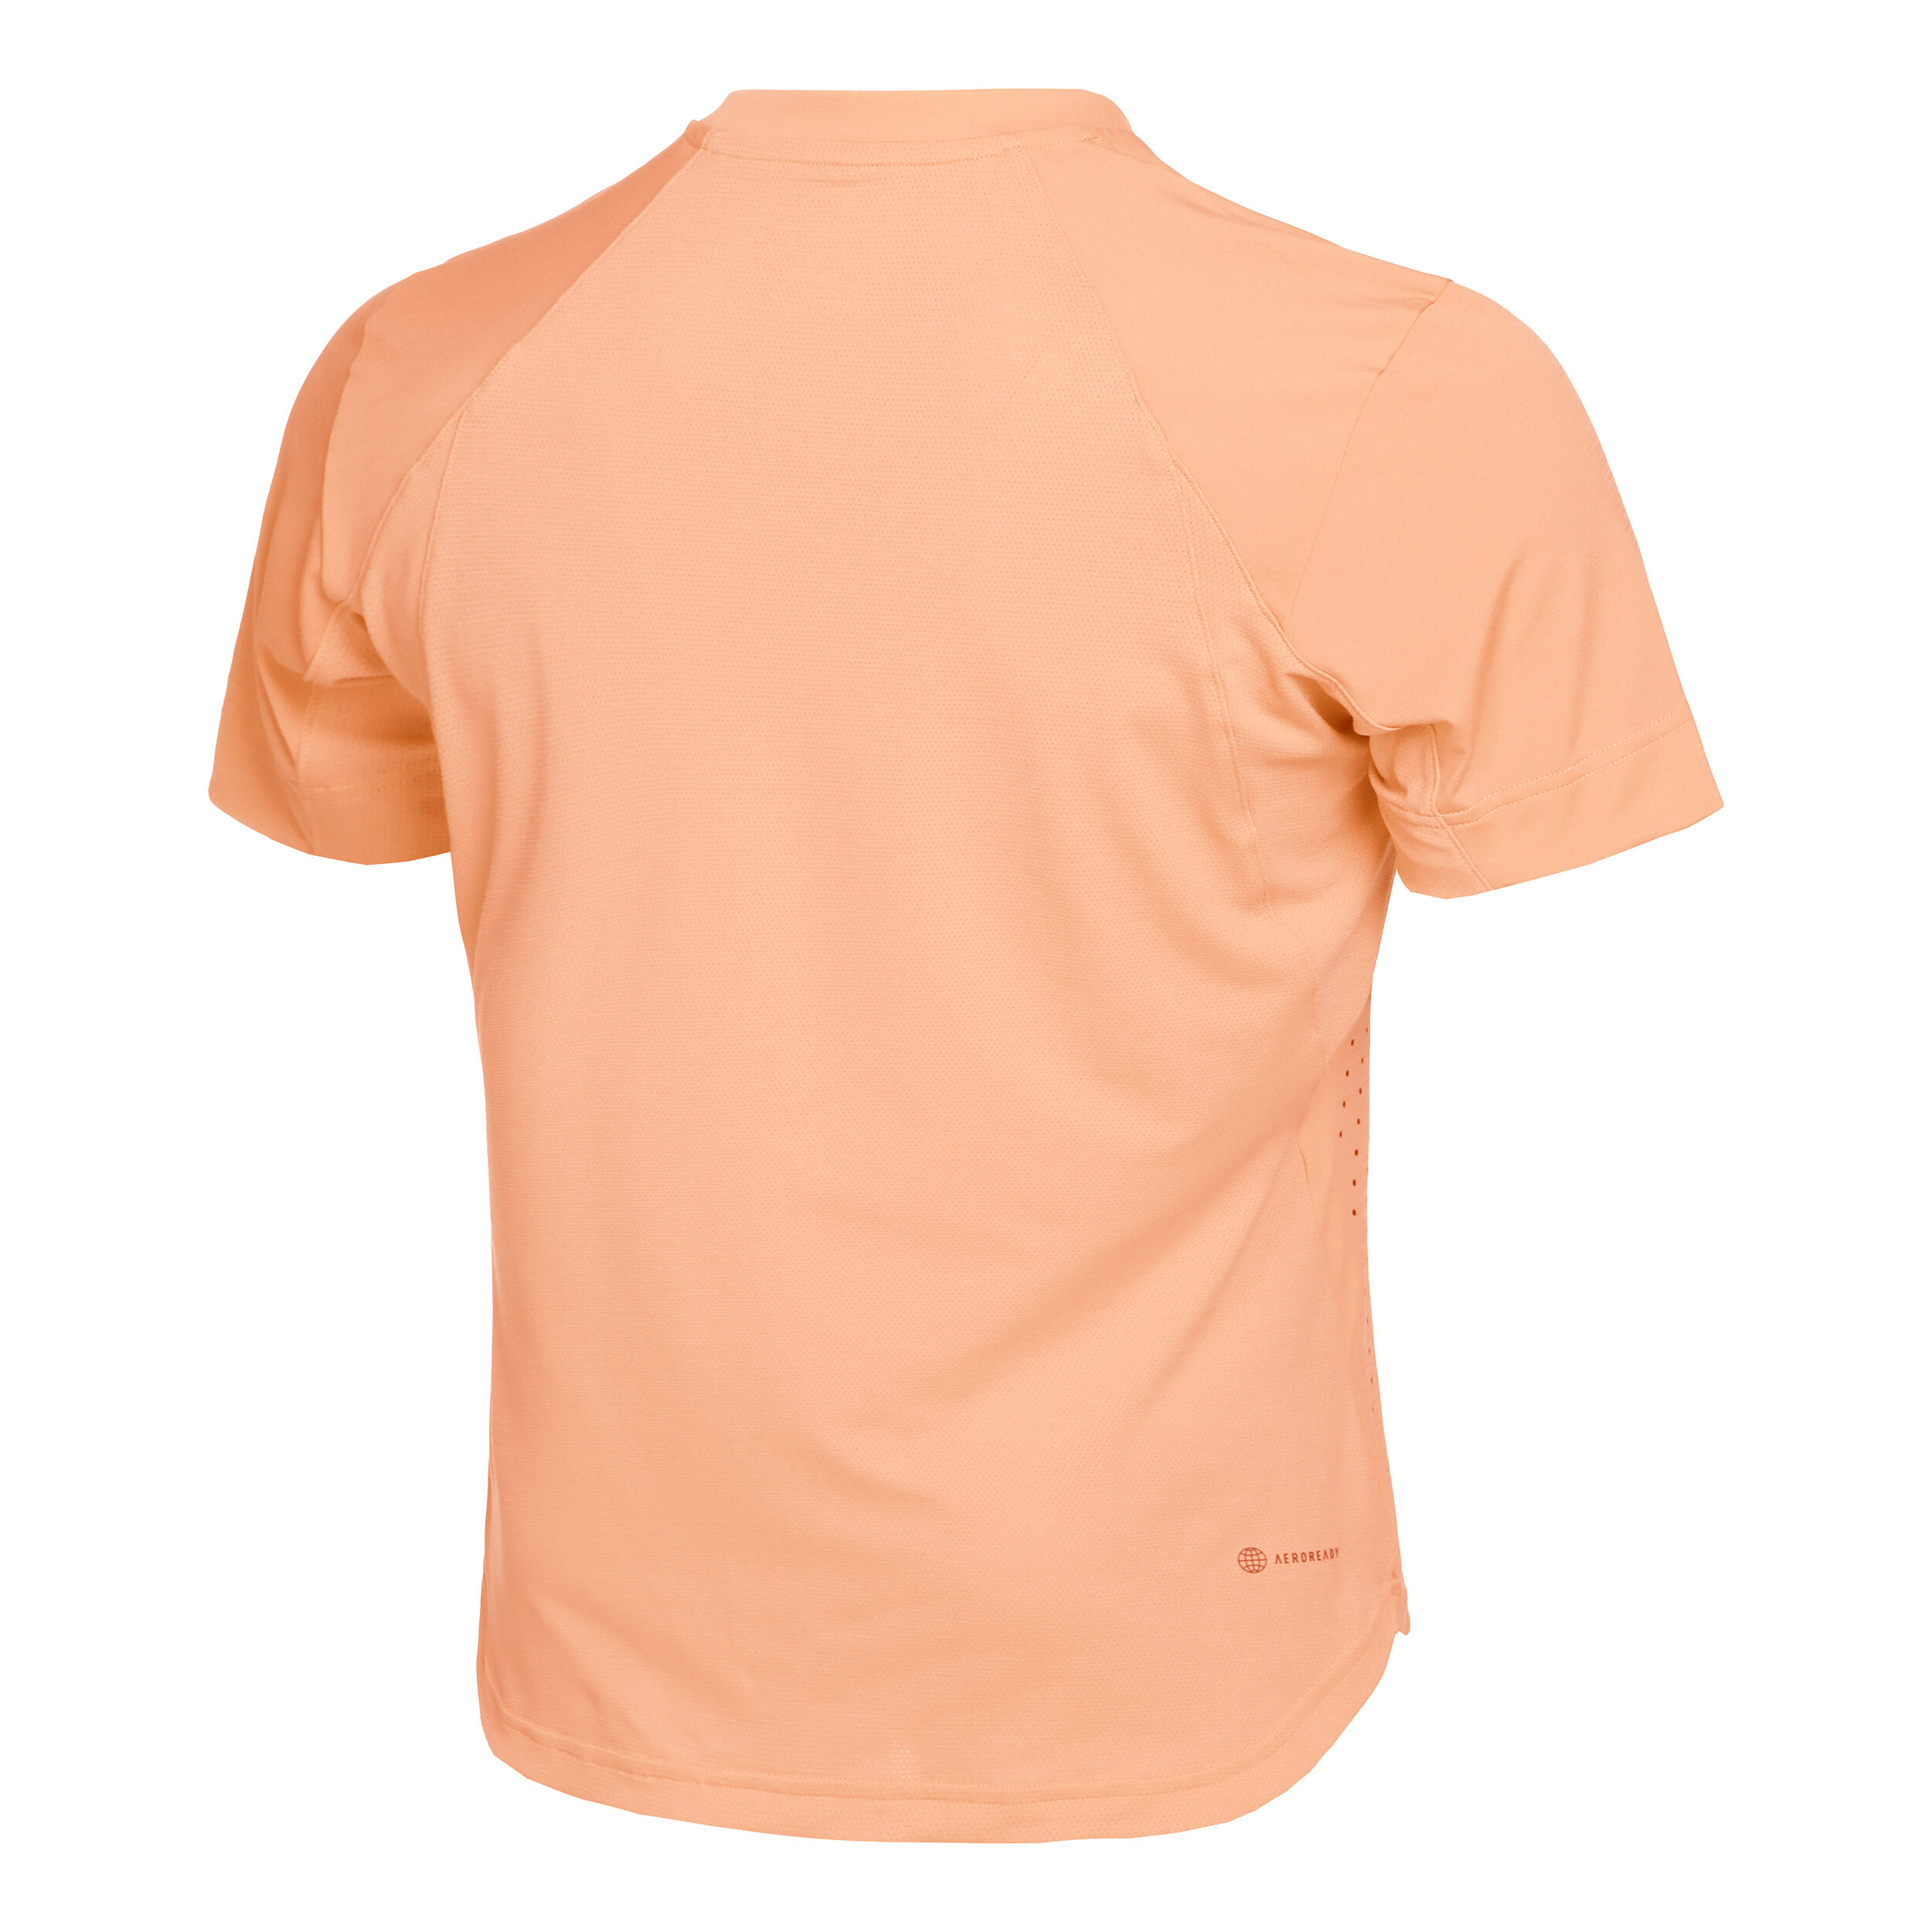 T-shirt da tennis New York FreeLiftadidas in Materiale sintetico da Uomo colore Arancione Uomo T-shirt da T-shirt adidas 